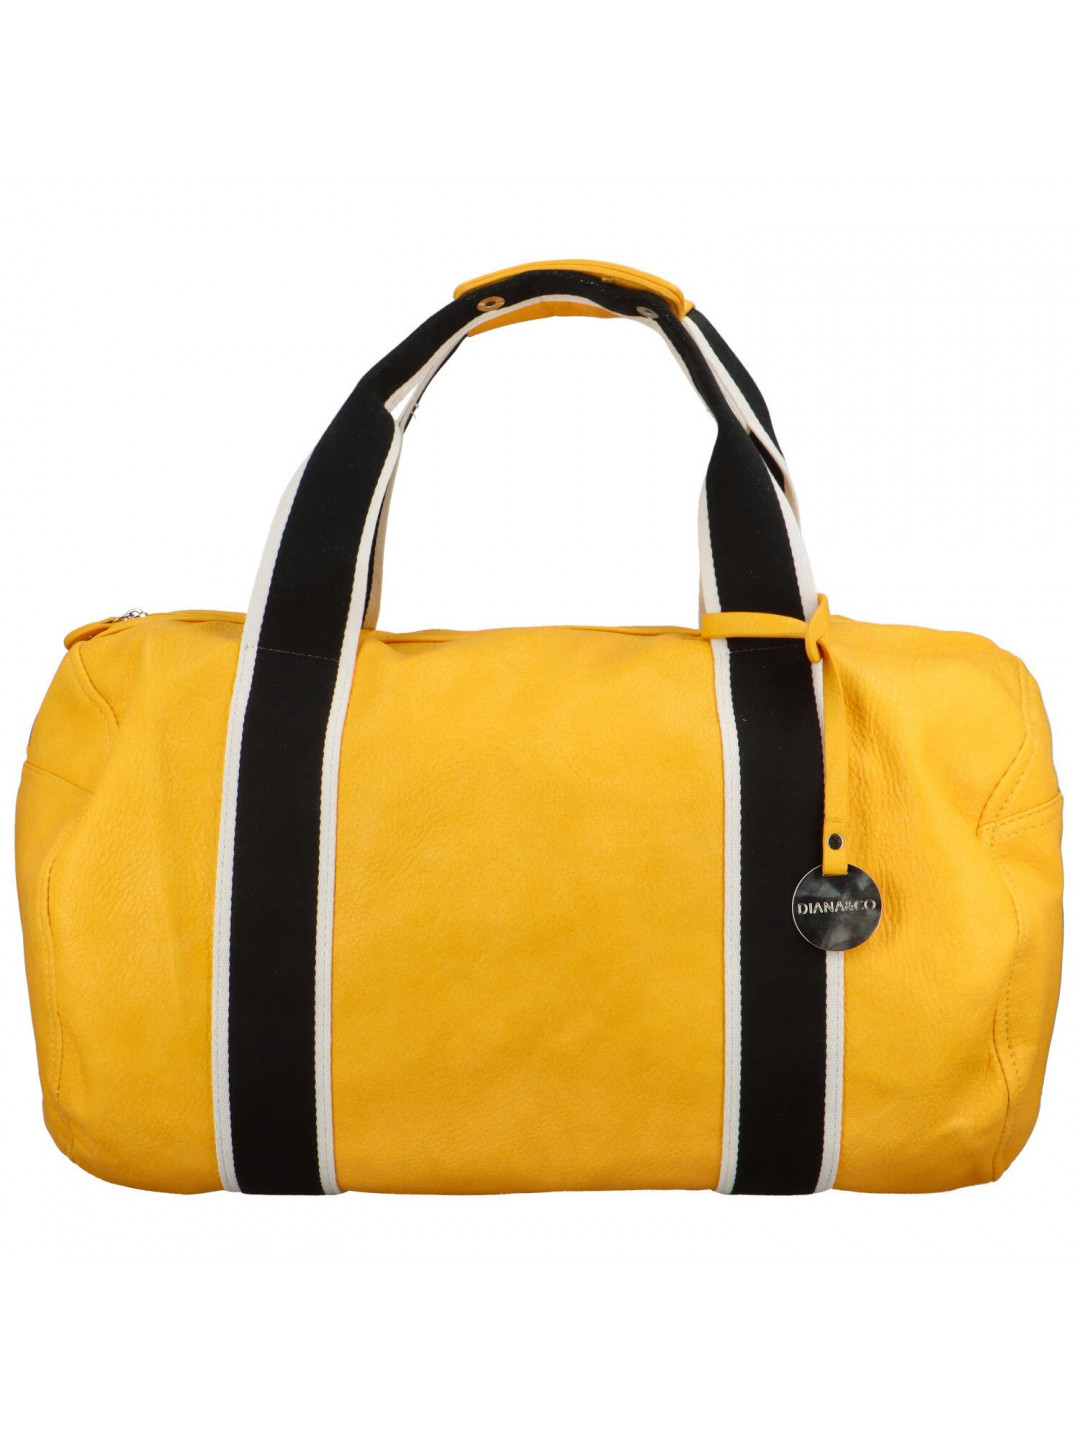 Dámská taška žlutá – DIANA & CO Bles